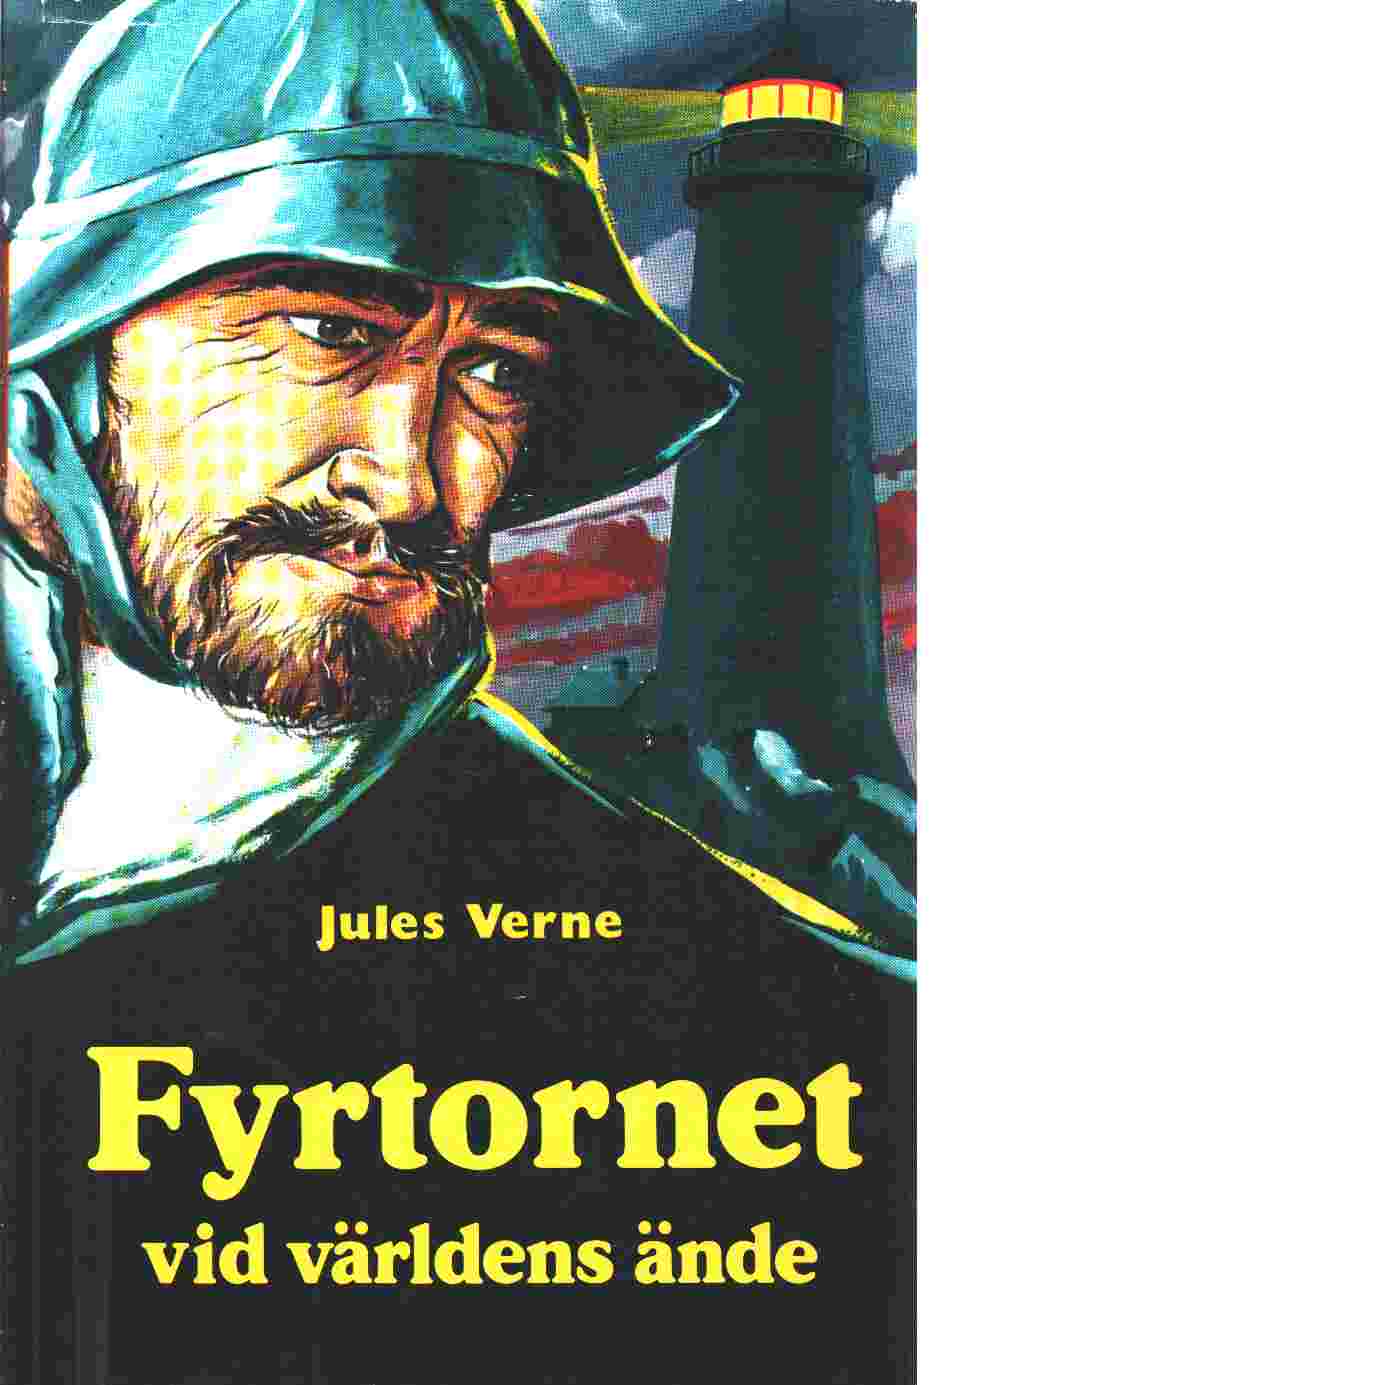 Verne, Jules "Fyrtornet vid världens ände" INBUNDEN